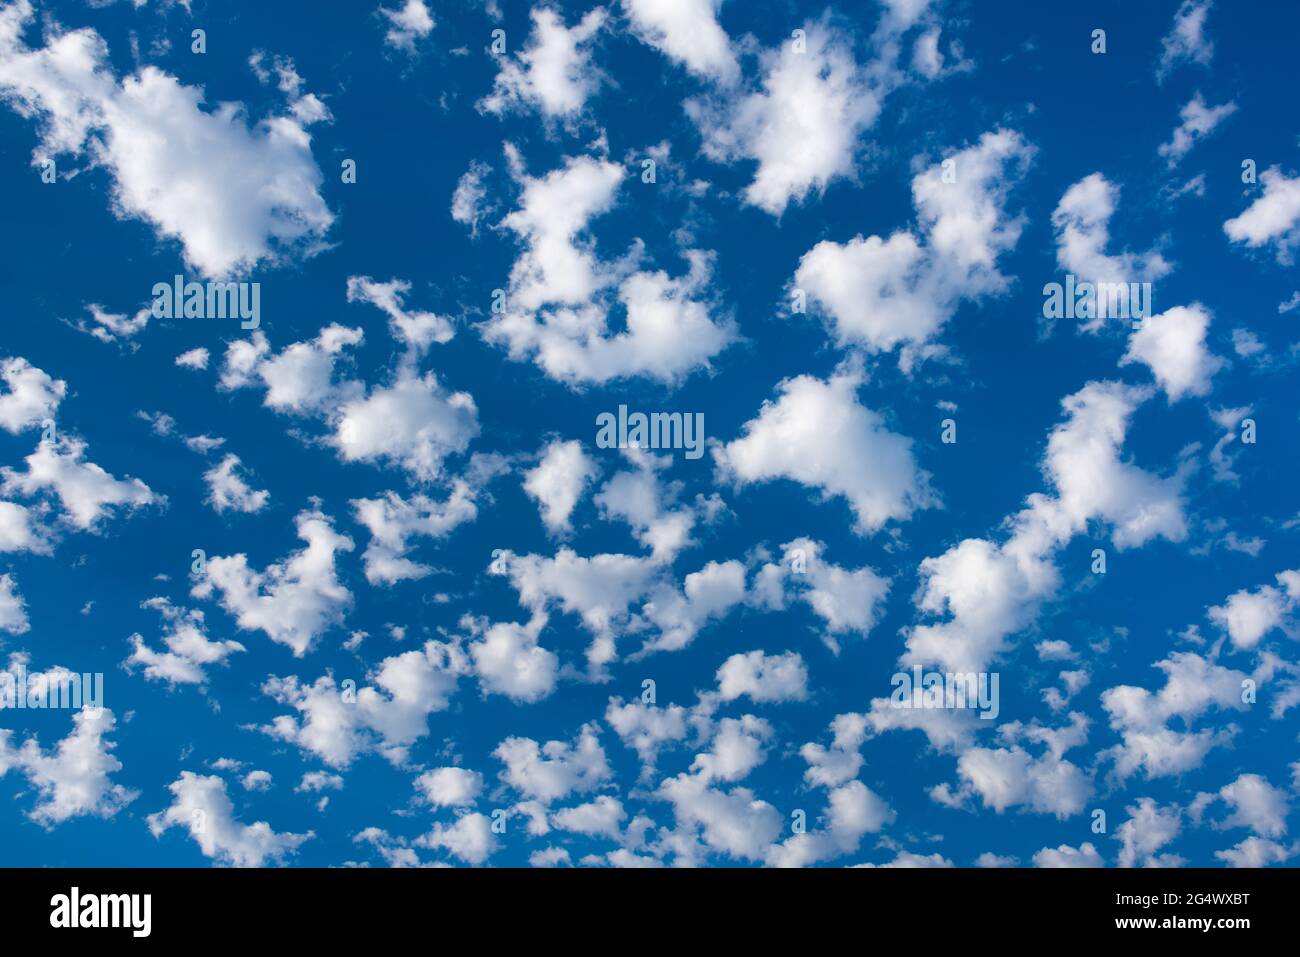 Fotos de stock para los sitios web de la revista meteorológica parcialmente nublado cielo azul. Bolas hinchadas nubes de algodón Foto de stock